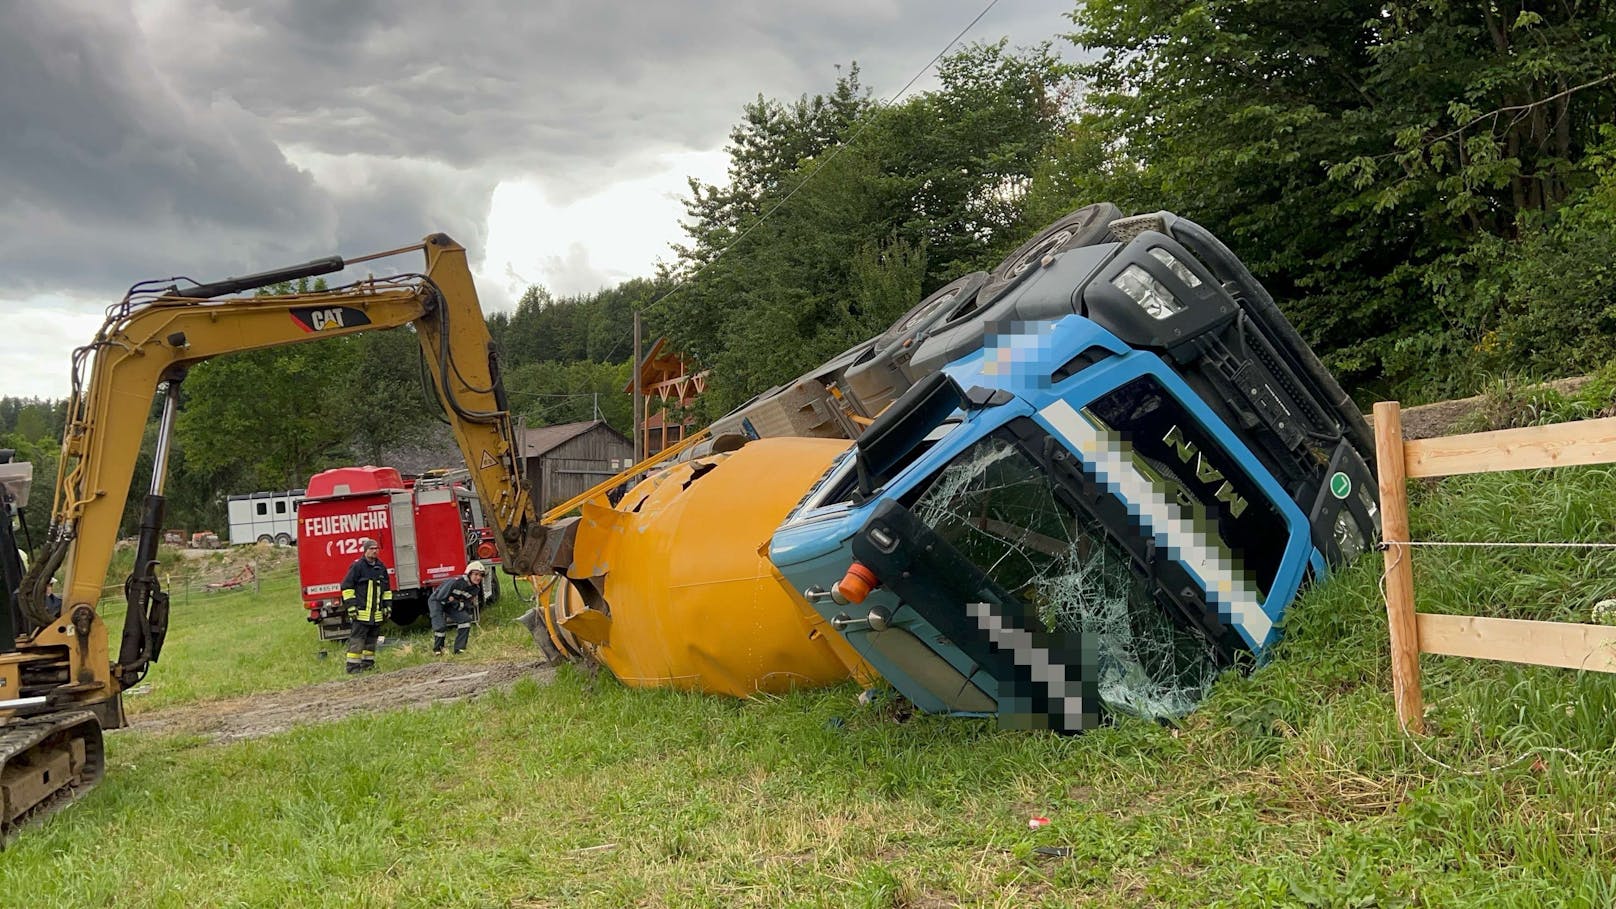 Spektakulärer Crash – Betonmischwagen stürzte in Graben